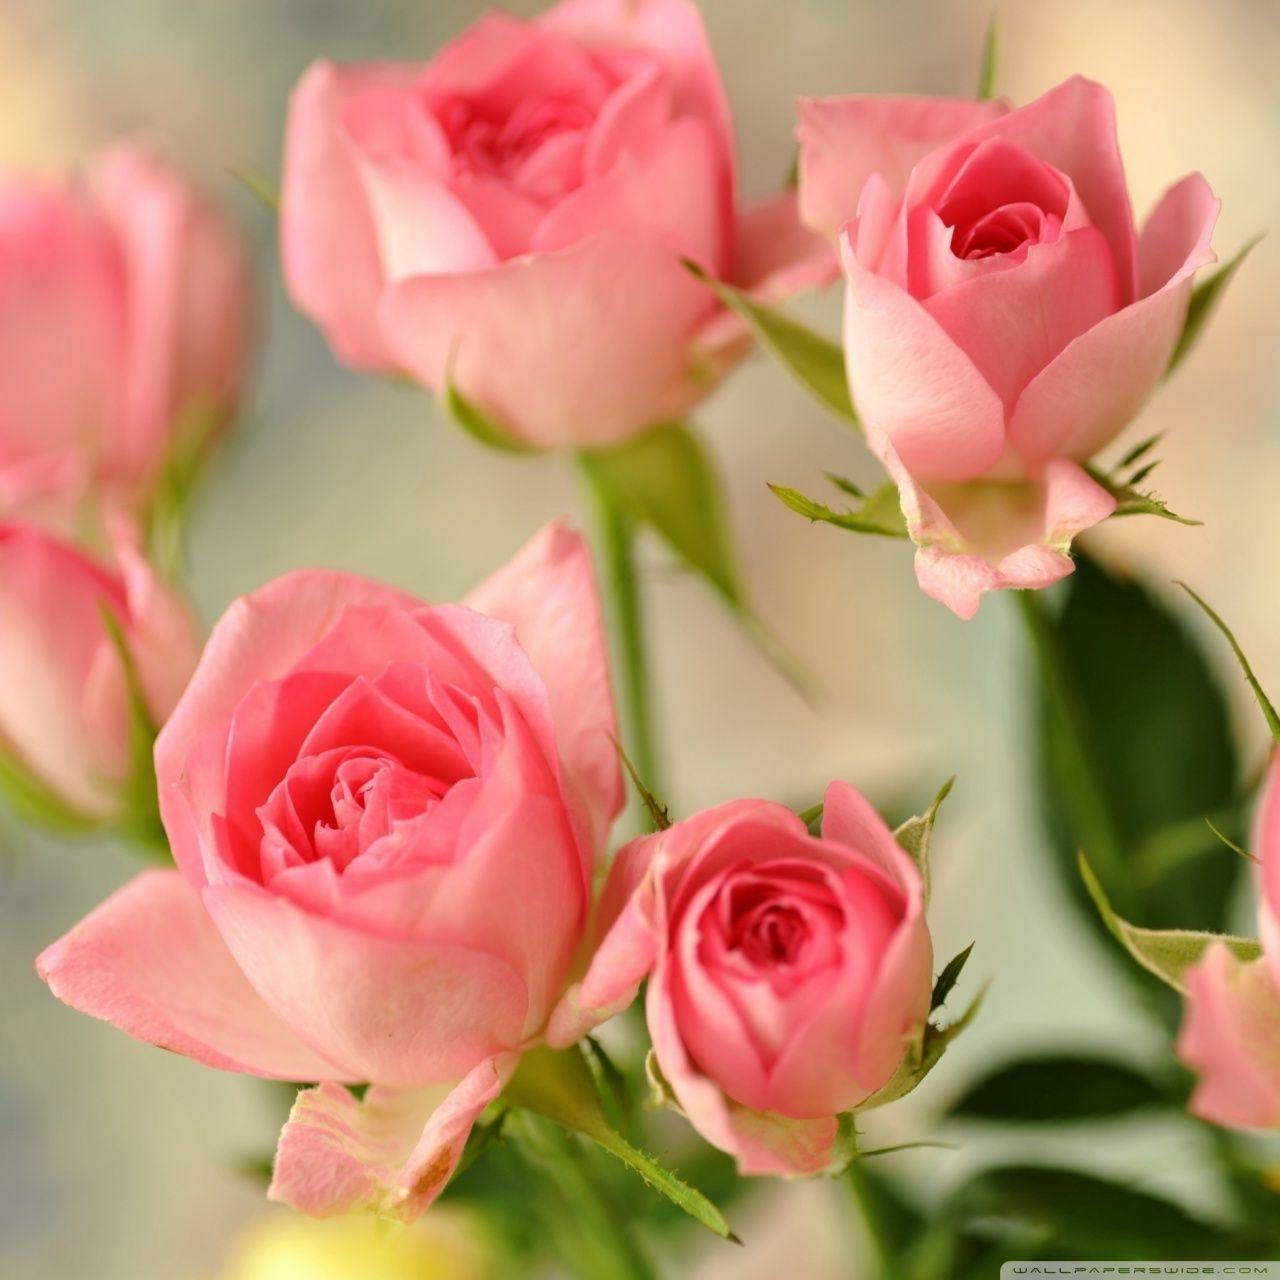 Cute Pink Roses ❤ 4K HD Desktop Wallpaper for 4K Ultra HD TV • Wide